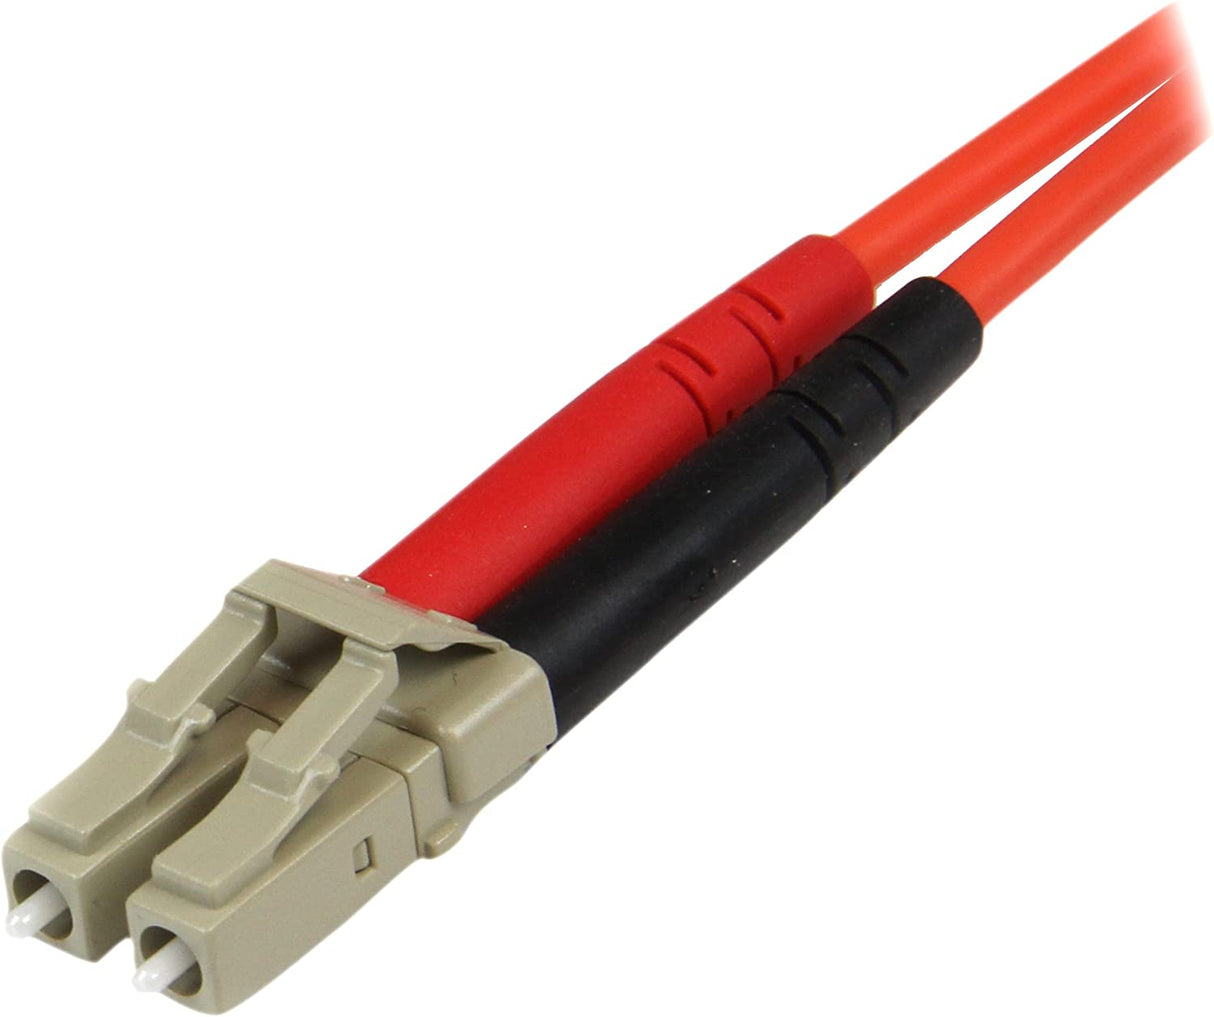 StarTech.com Fiber Optic Cable - Multimode Duplex 50/125 - LSZH - LC/ST - OM2 - LC to ST Fiber Patch Cable, Orange, 10m/30ft (50FIBLCST10) Orange 33 ft / 10 m LC to ST Multimode Duplex 50/125